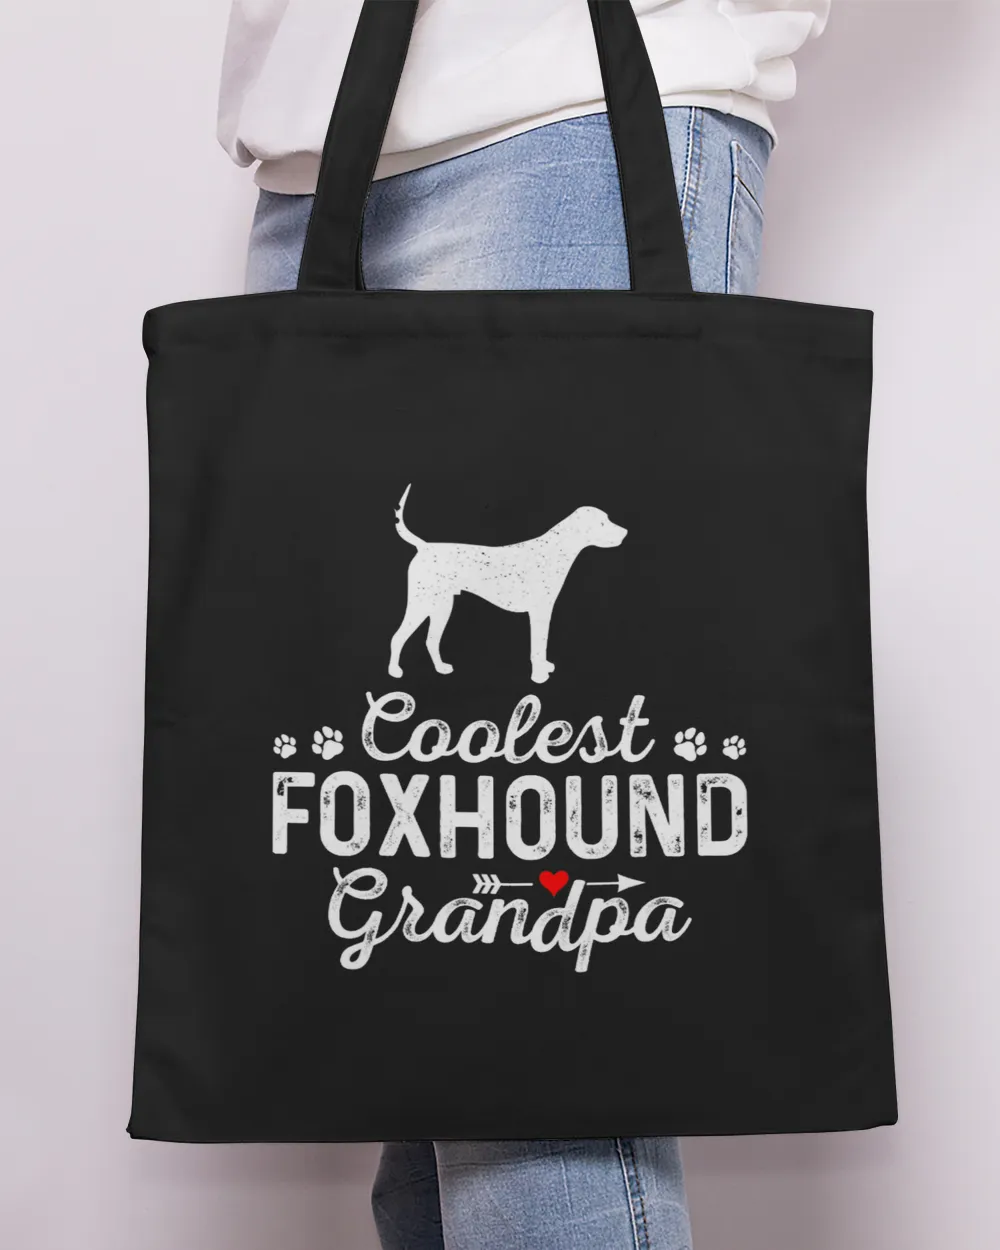 Mens Coolest FOXHOUND Grandpa Funny Dog Grandpa Pet Family